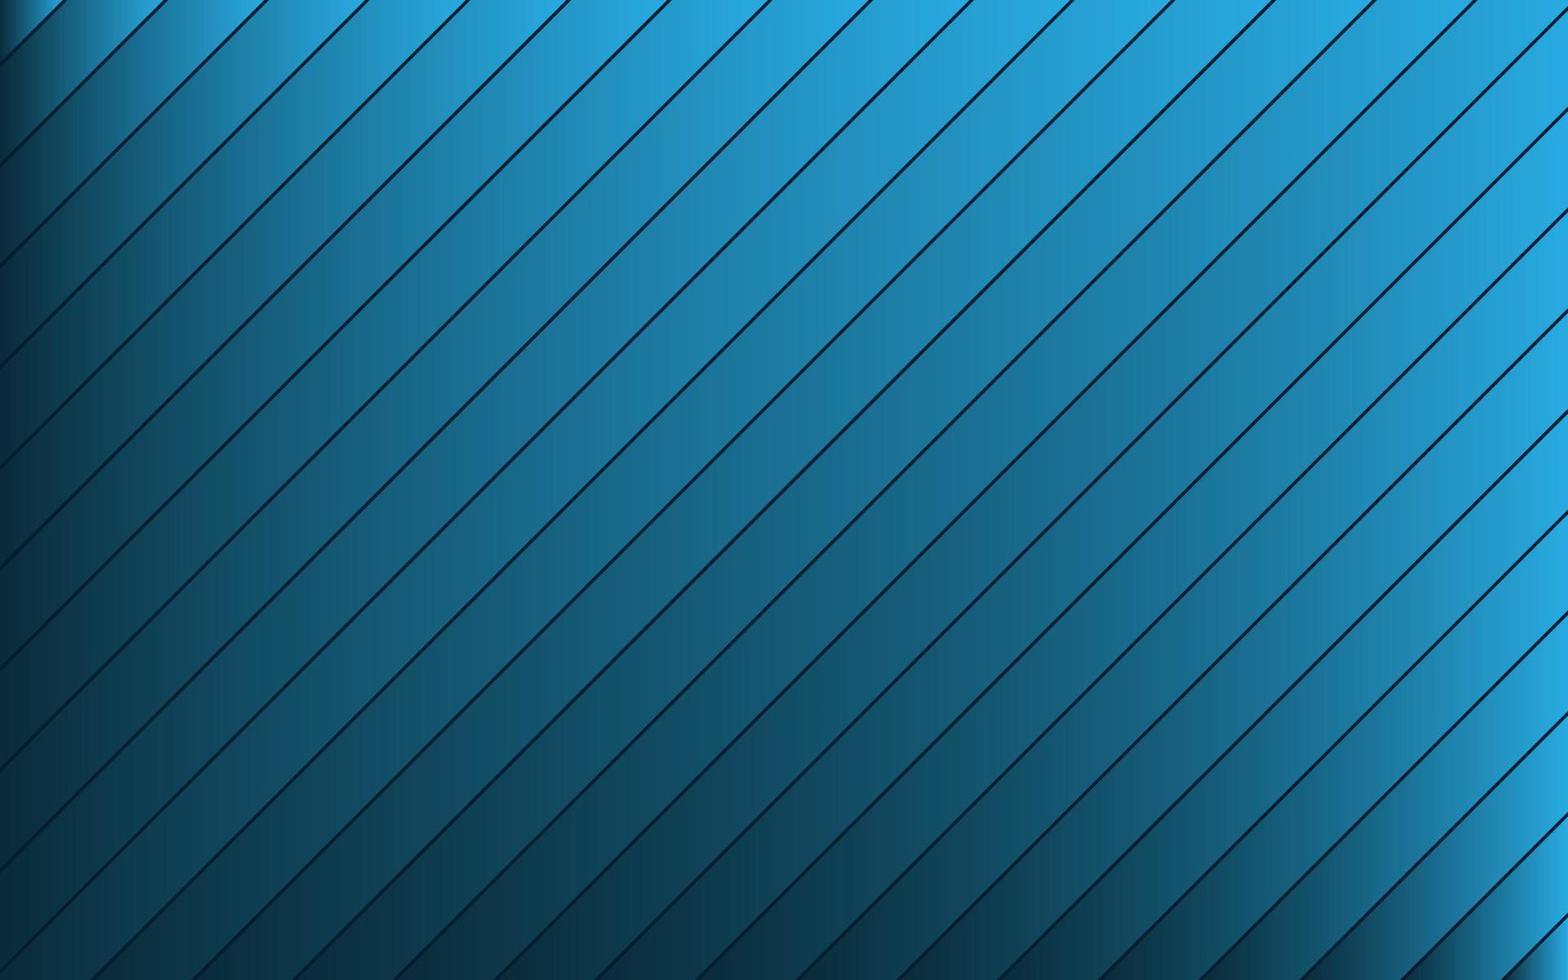 sned blå och svart randig bakgrund. diagonala linjer och ränder. abstrakt vektorillustration vektor